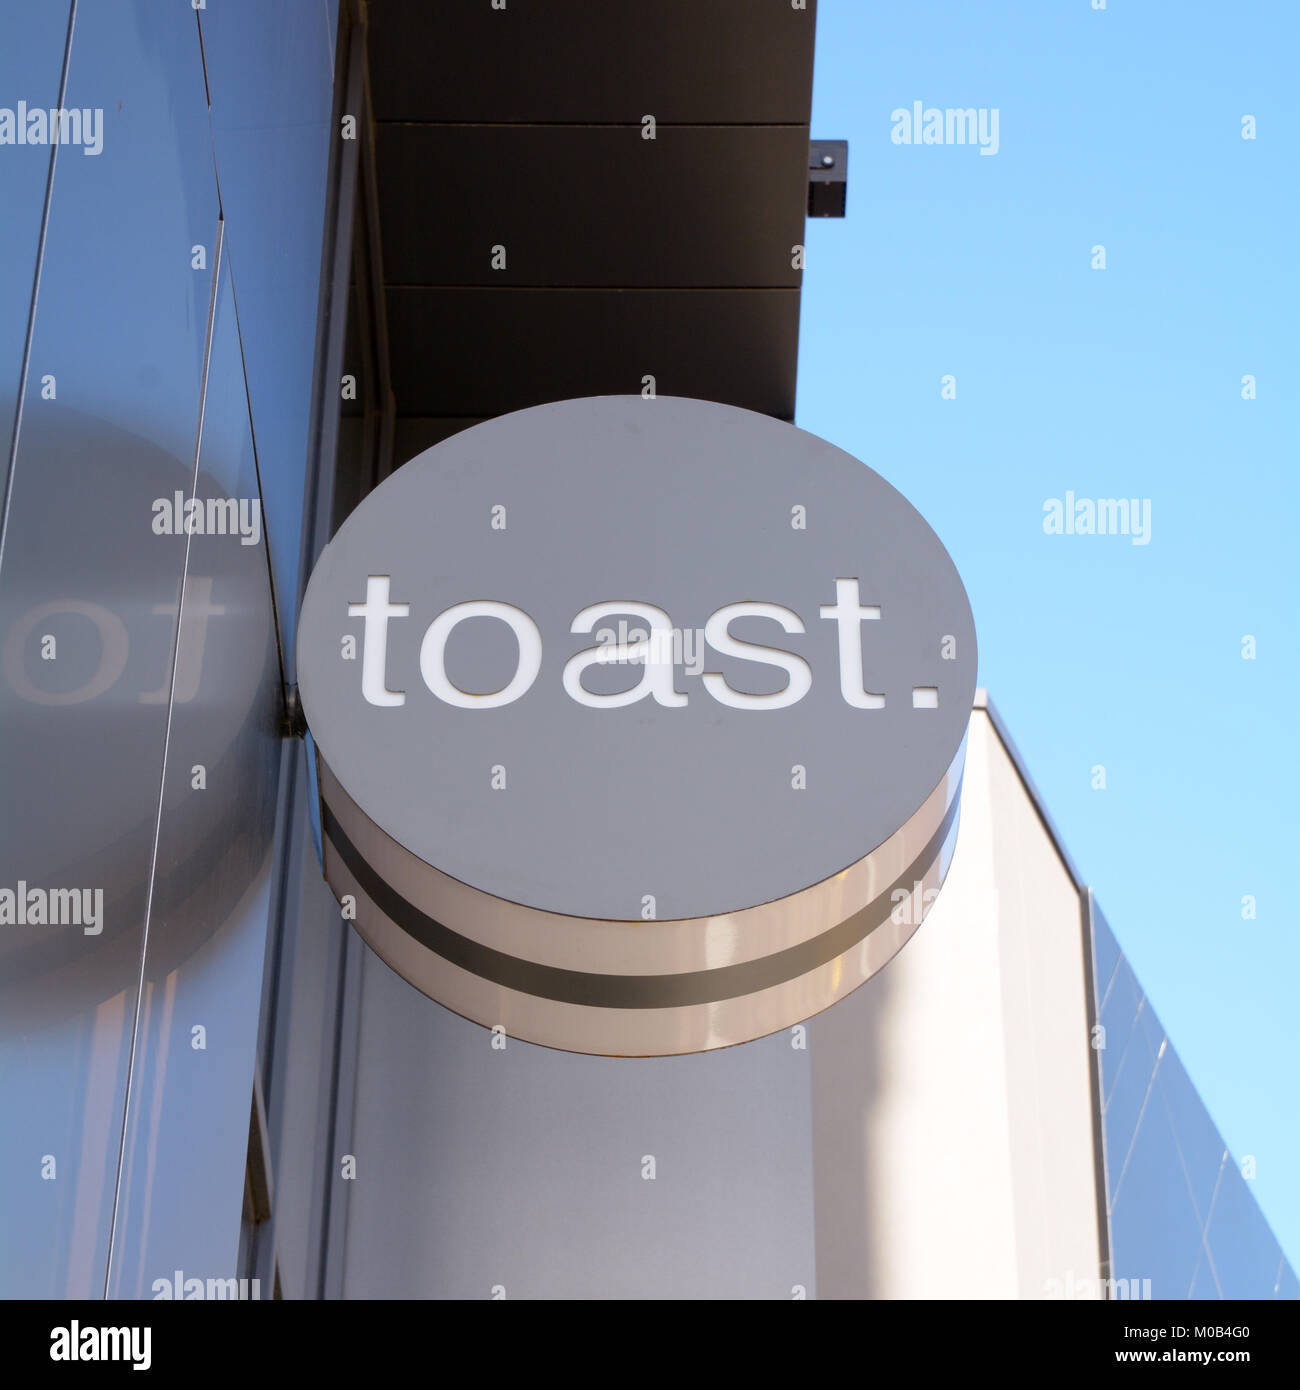 Restaurant Toast - un concept restaurant où tout est servi sur un toast à Bedford Bedfordshire Angleterre Banque D'Images